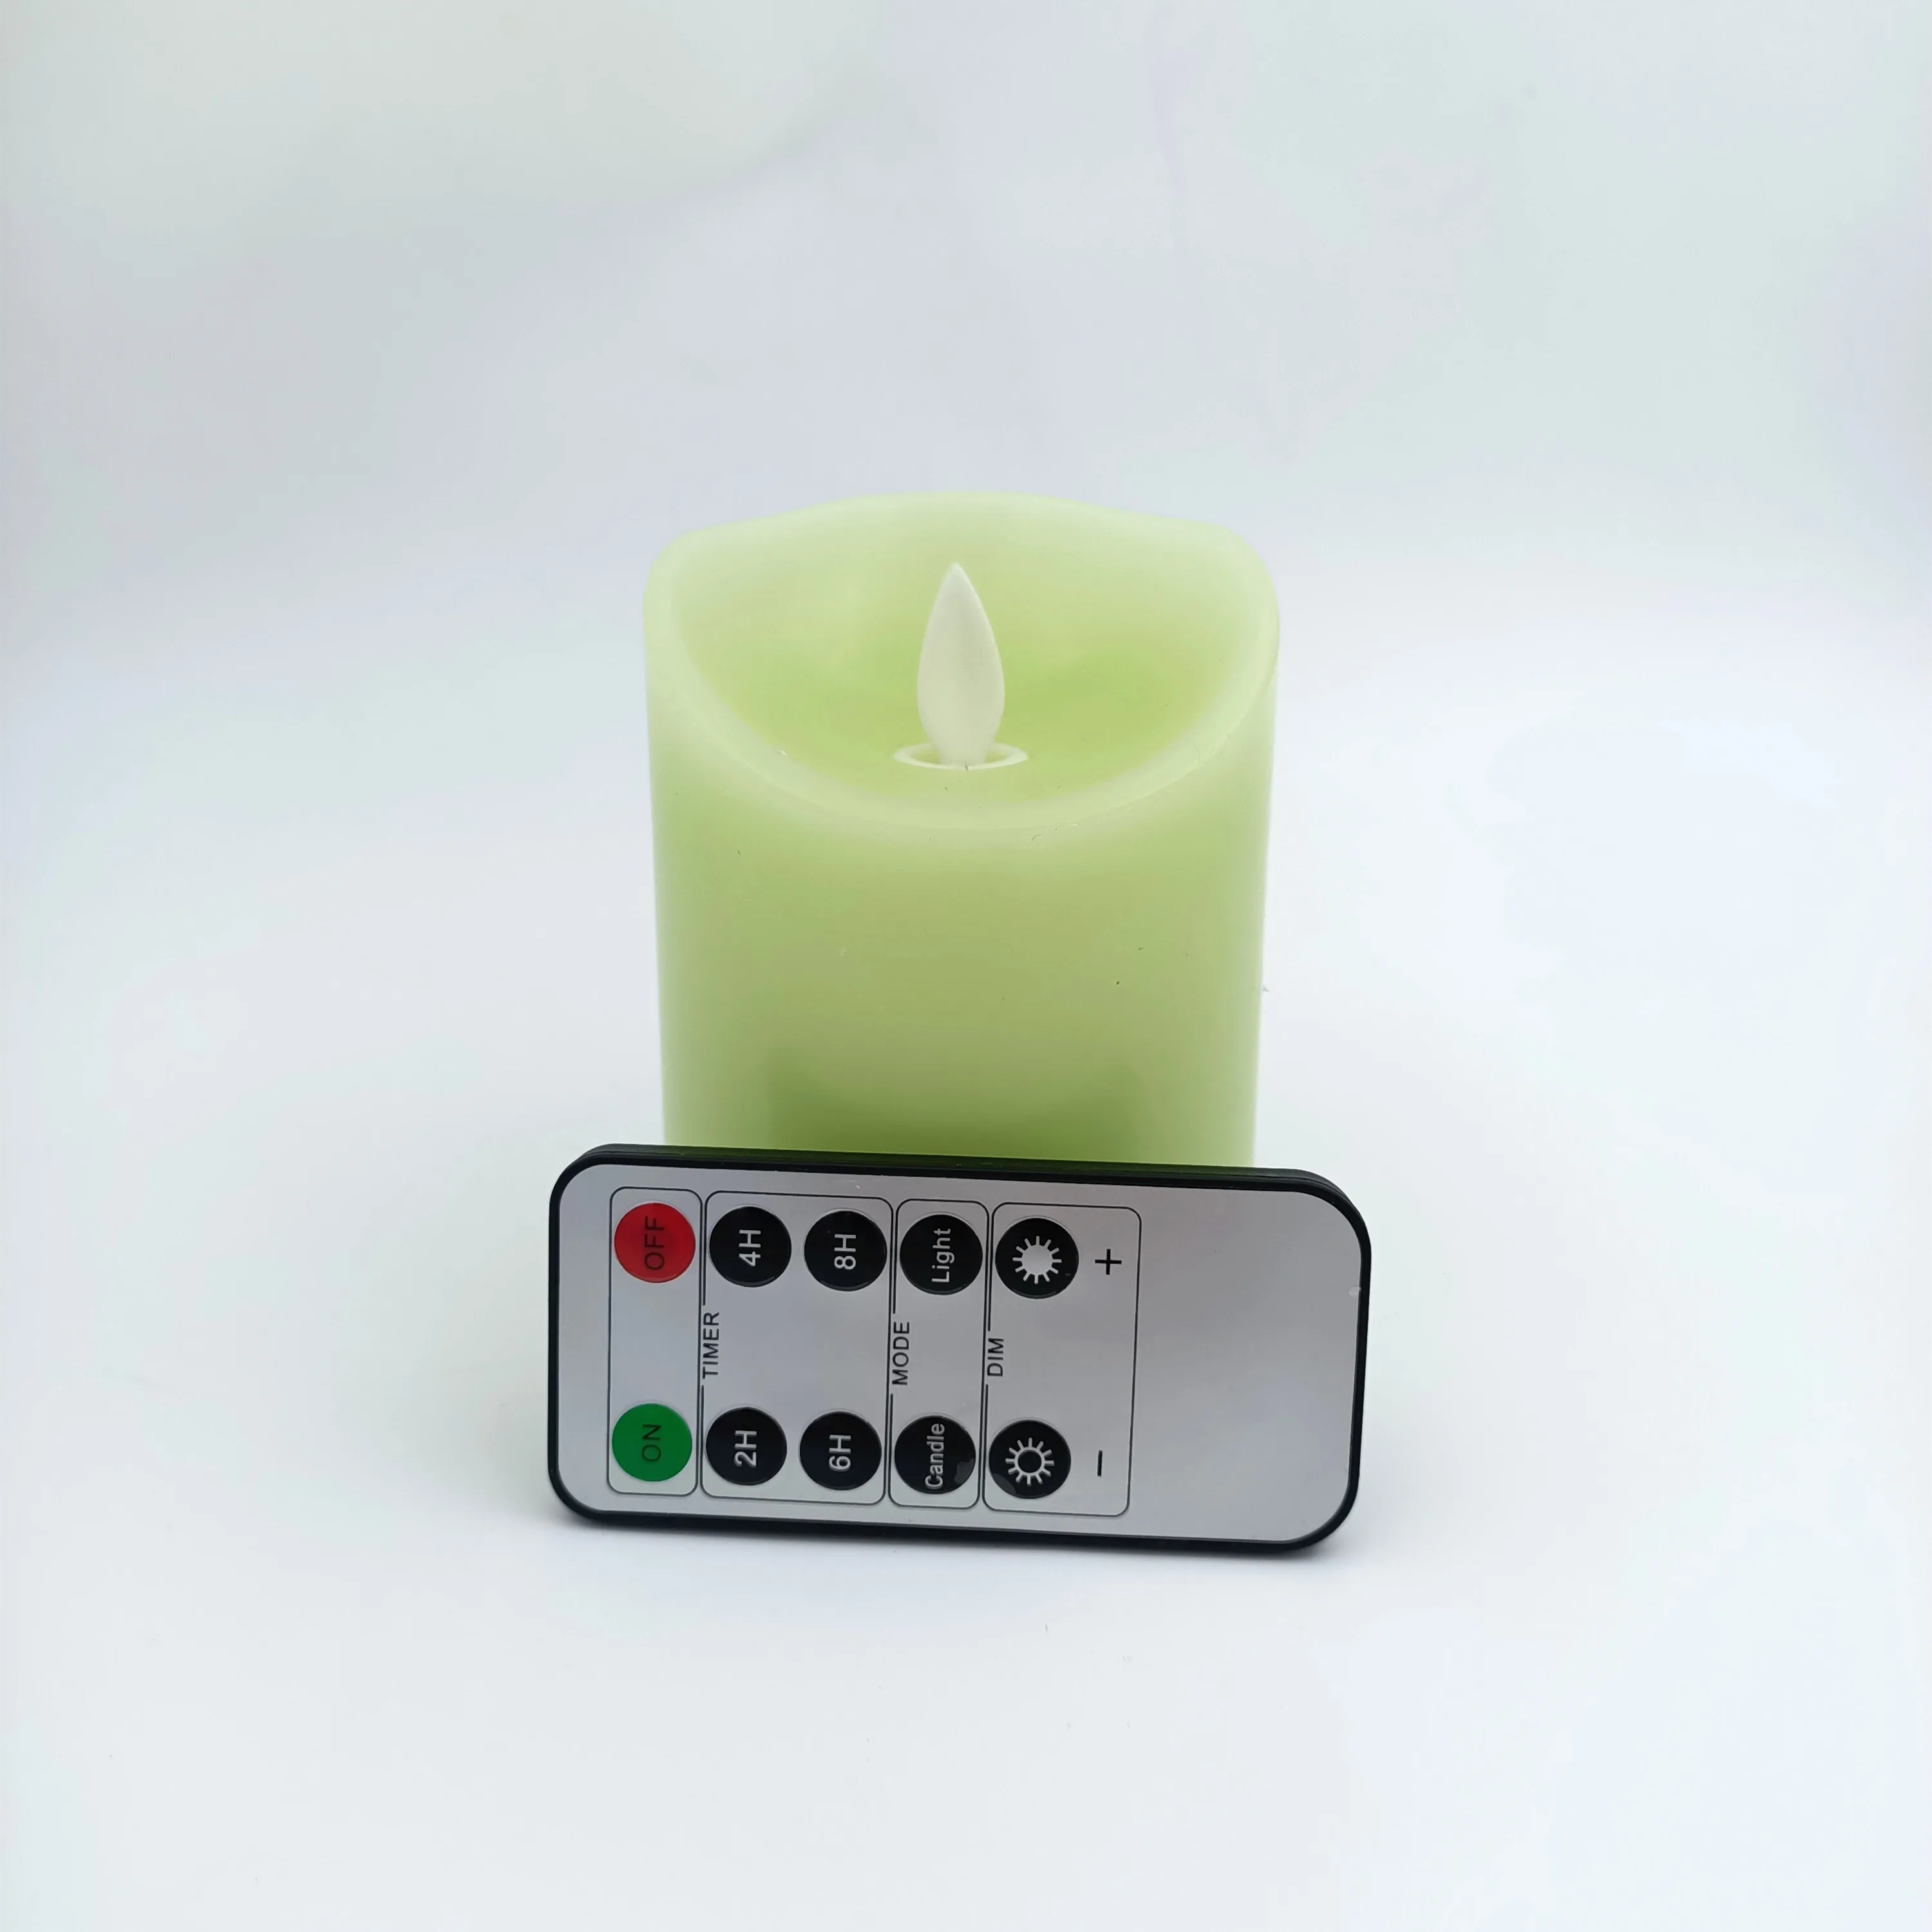 Зеленые светодиодные свечи на батарейках с дистанционным питанием от батарейки, светодиодная восковая свеча для украшения дома